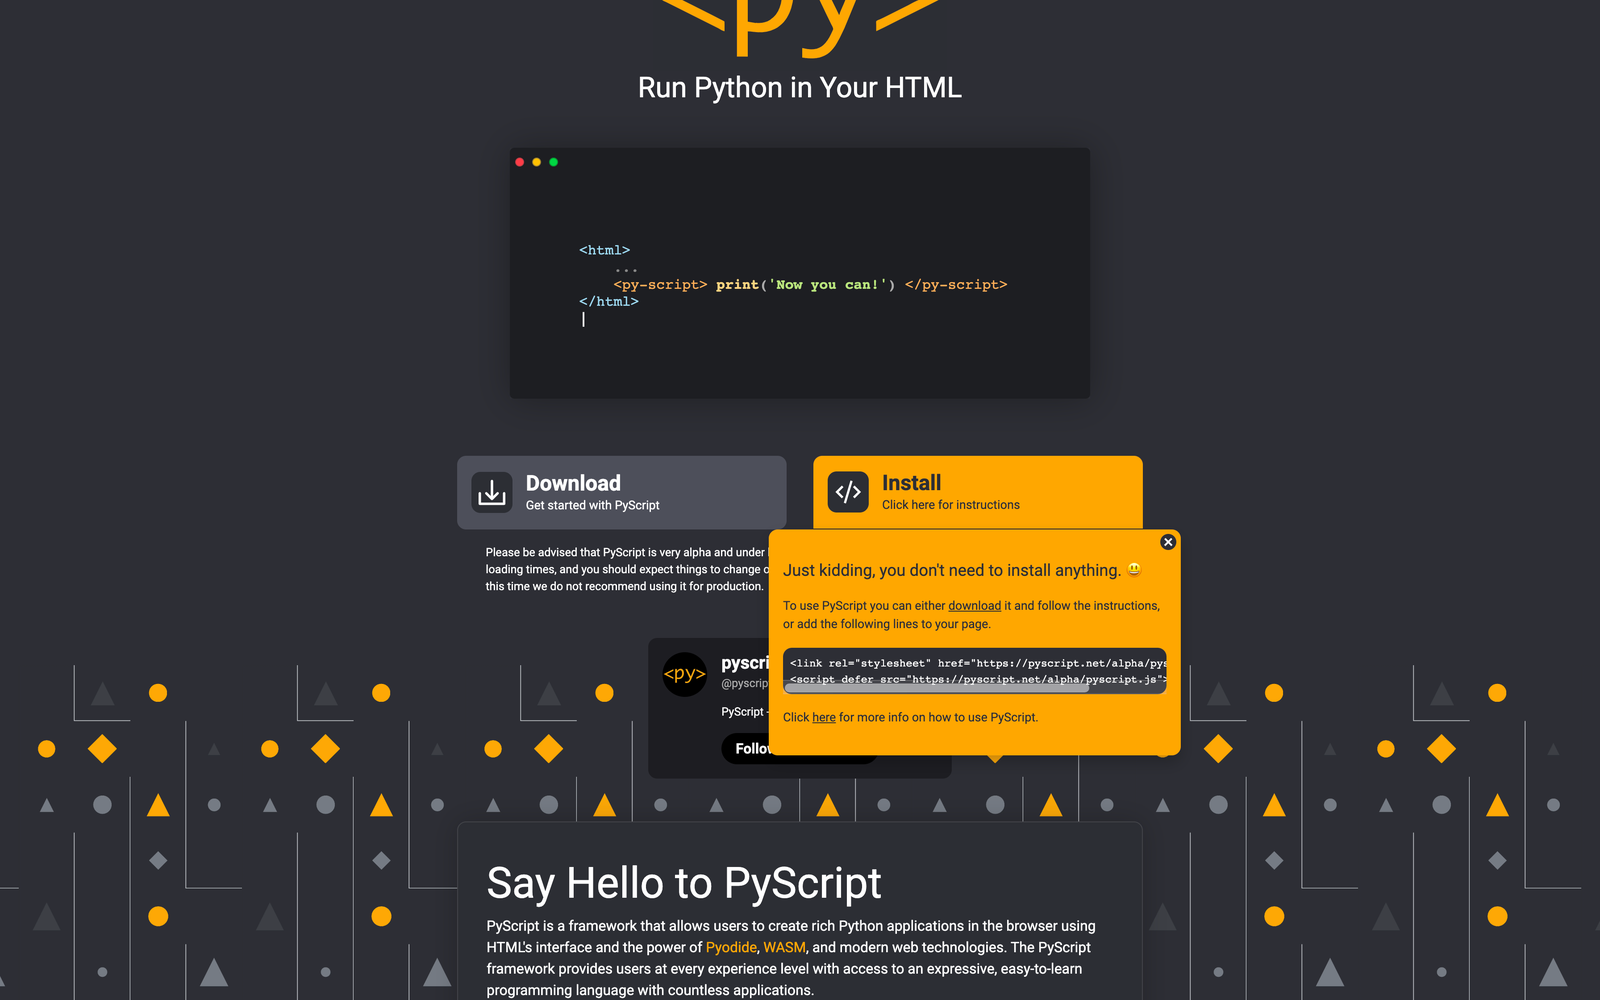 6. PyScript web page